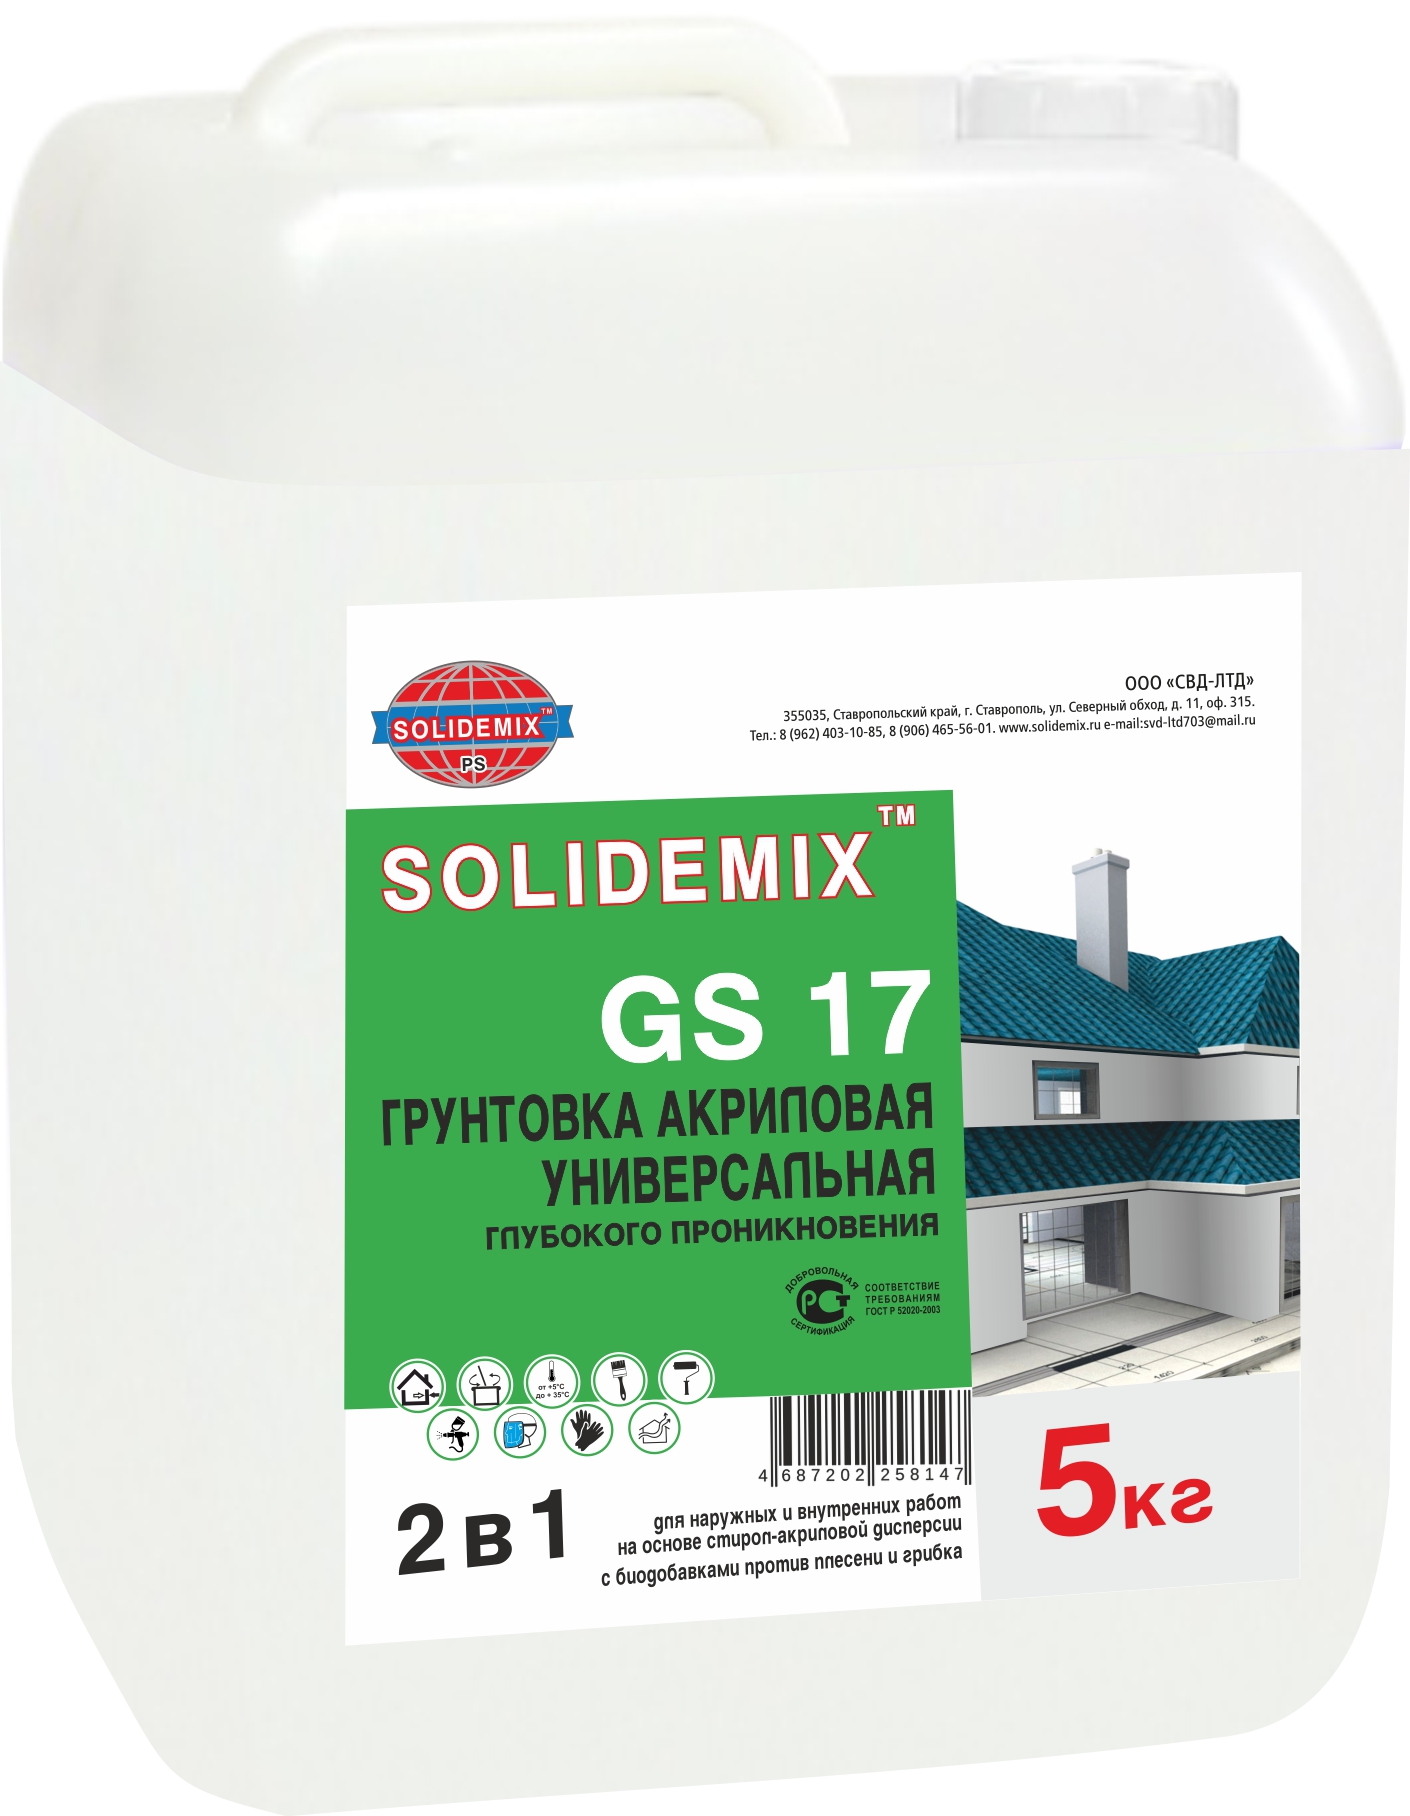 Купить Грунтовка акриловая, глубокого проникновения «SOLIDEMIX GS 17» от SOLIDEMIX